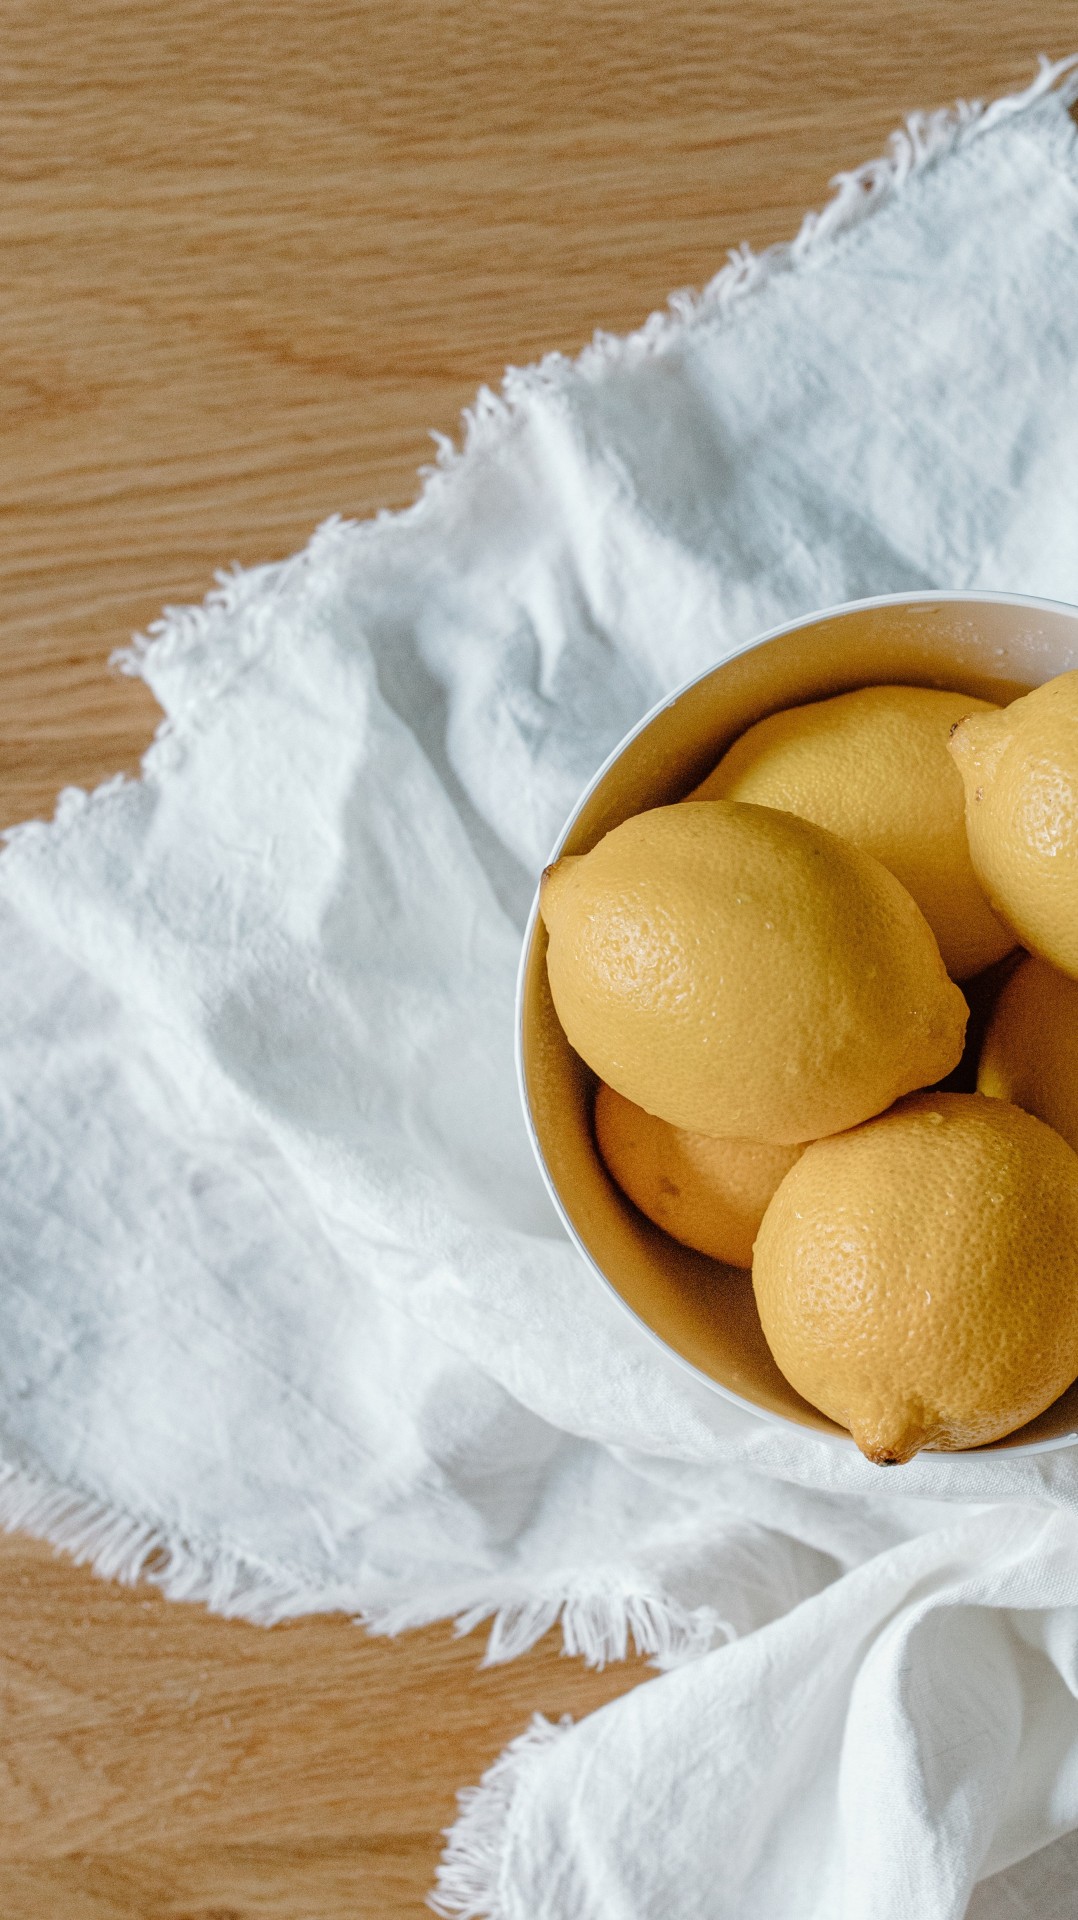 Lemons in bowl on table